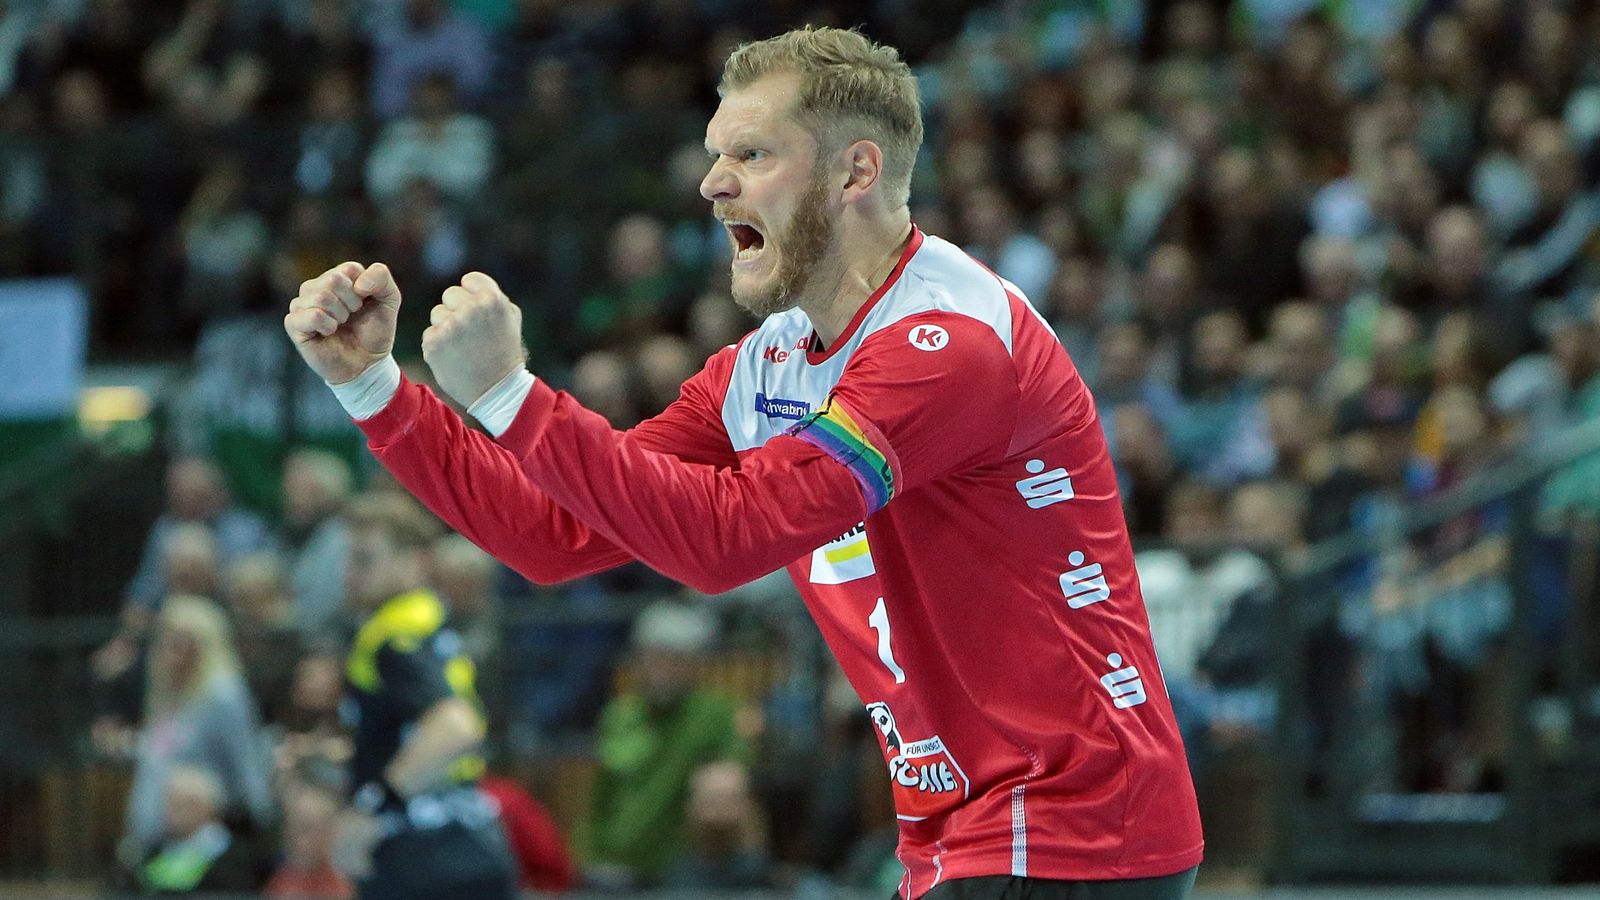 Corona-Krise Profis der Handball-Bundesliga setzen klares Zeichen und verzichten auf Gehalt Handball News Sky Sport